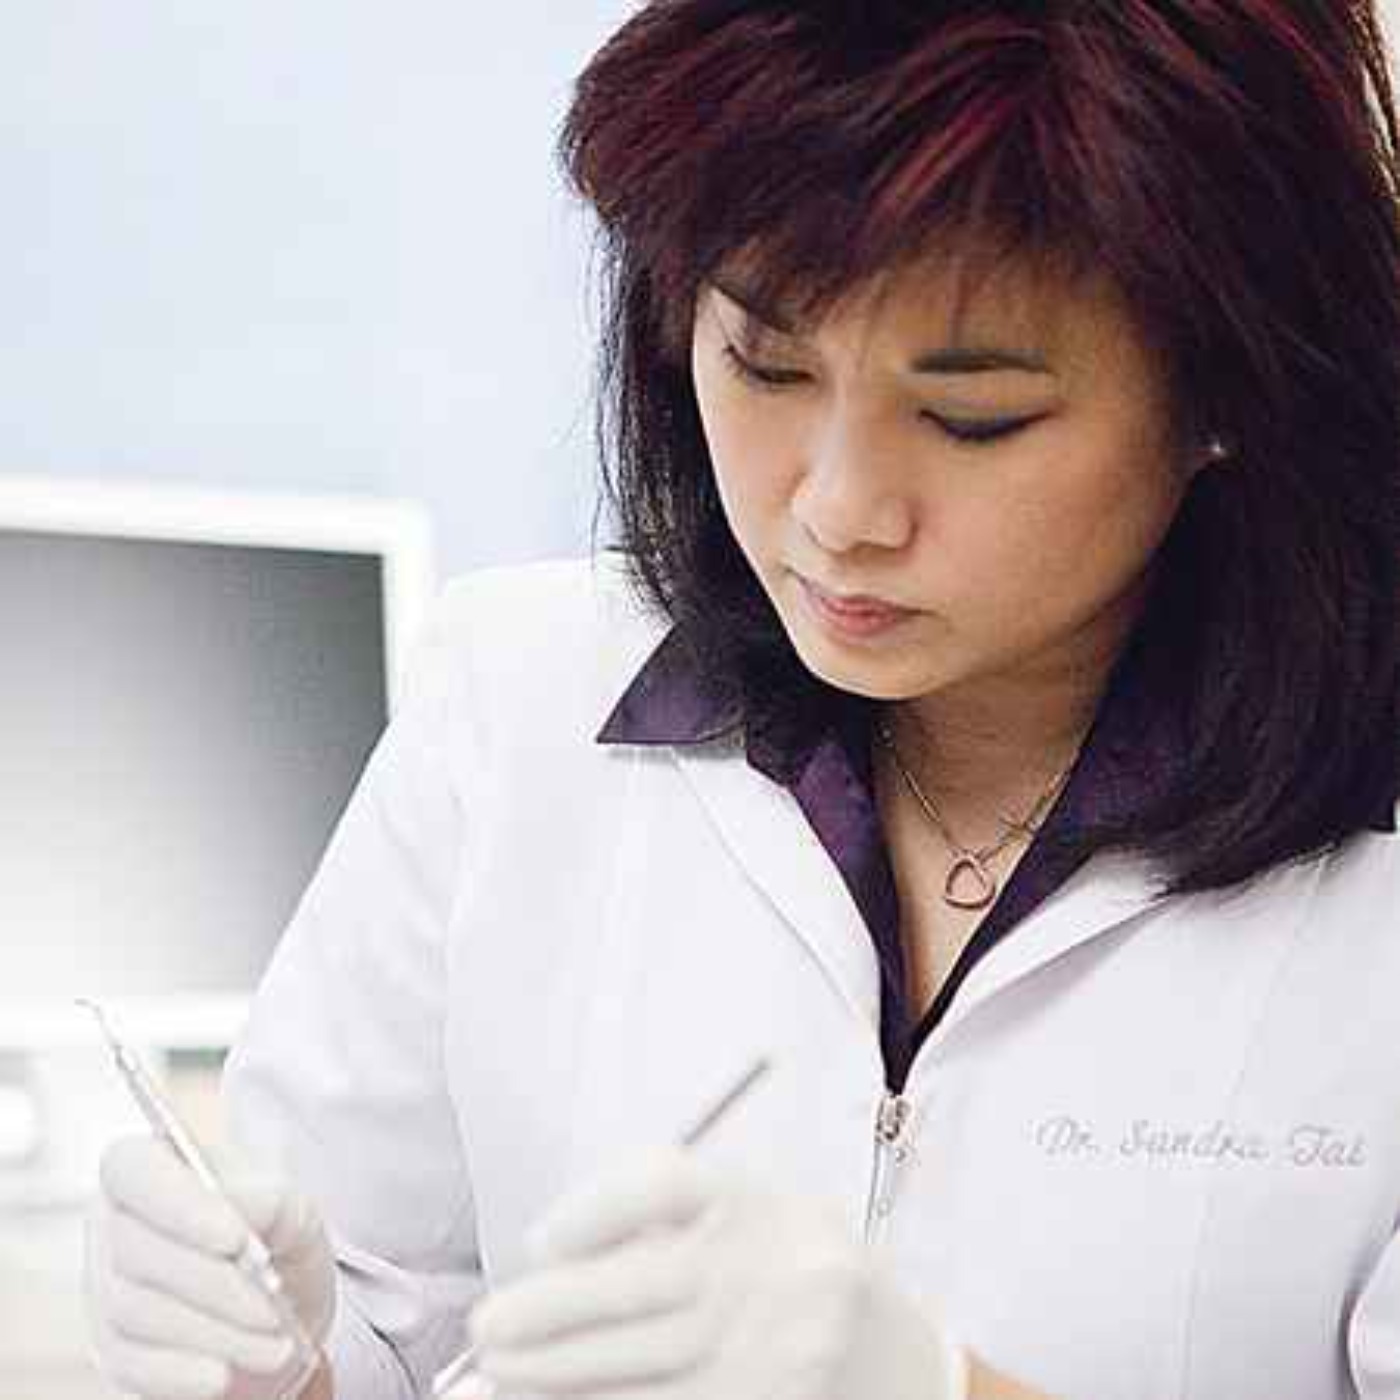 Dr. Sandra Tai